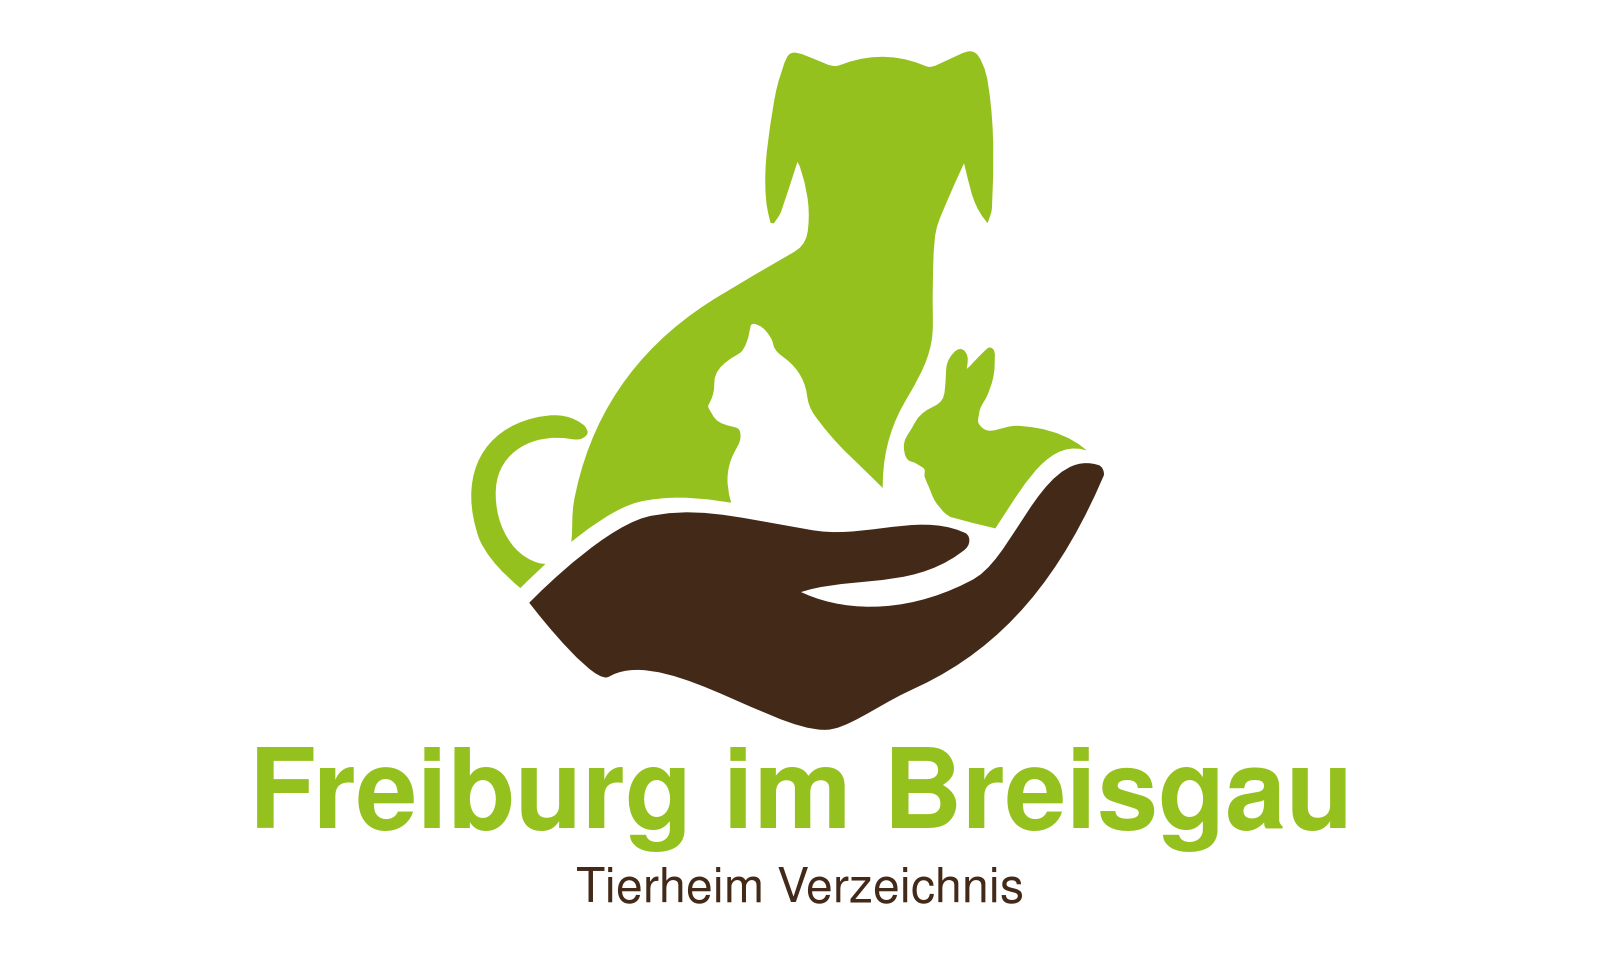 Tierheim Freiburg im Breisgau